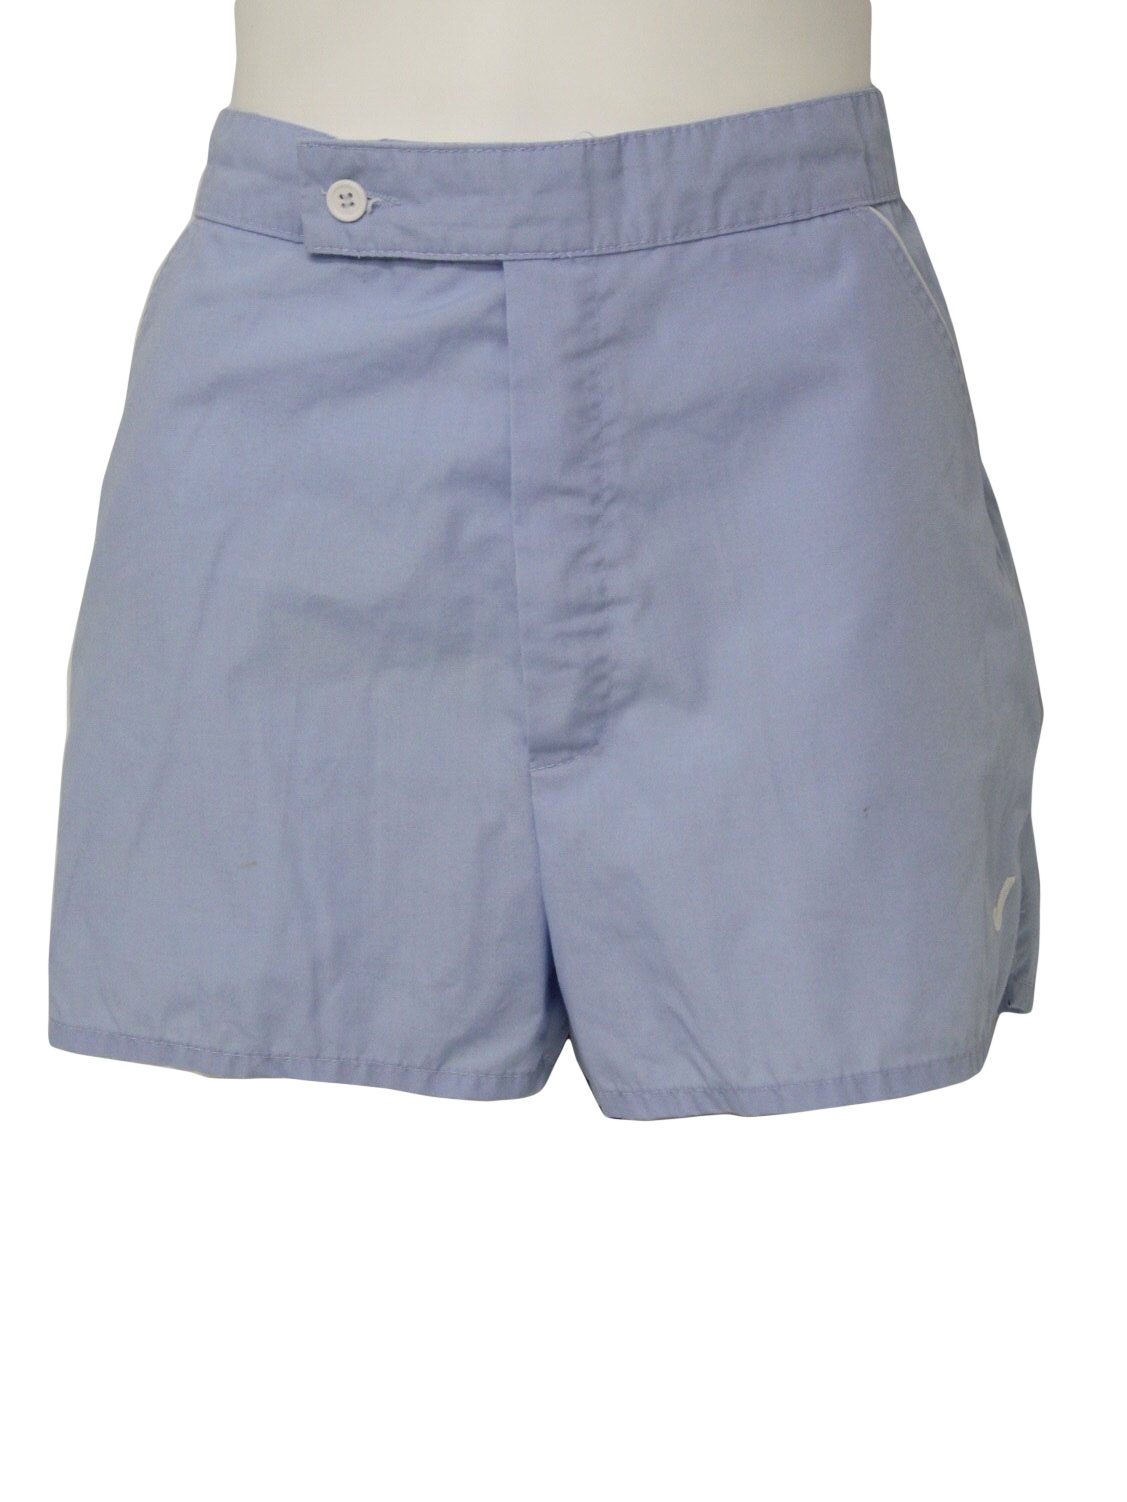 70's Jantzen Shorts: 70s -Jantzen- Mens light blue cotton blend casual ...